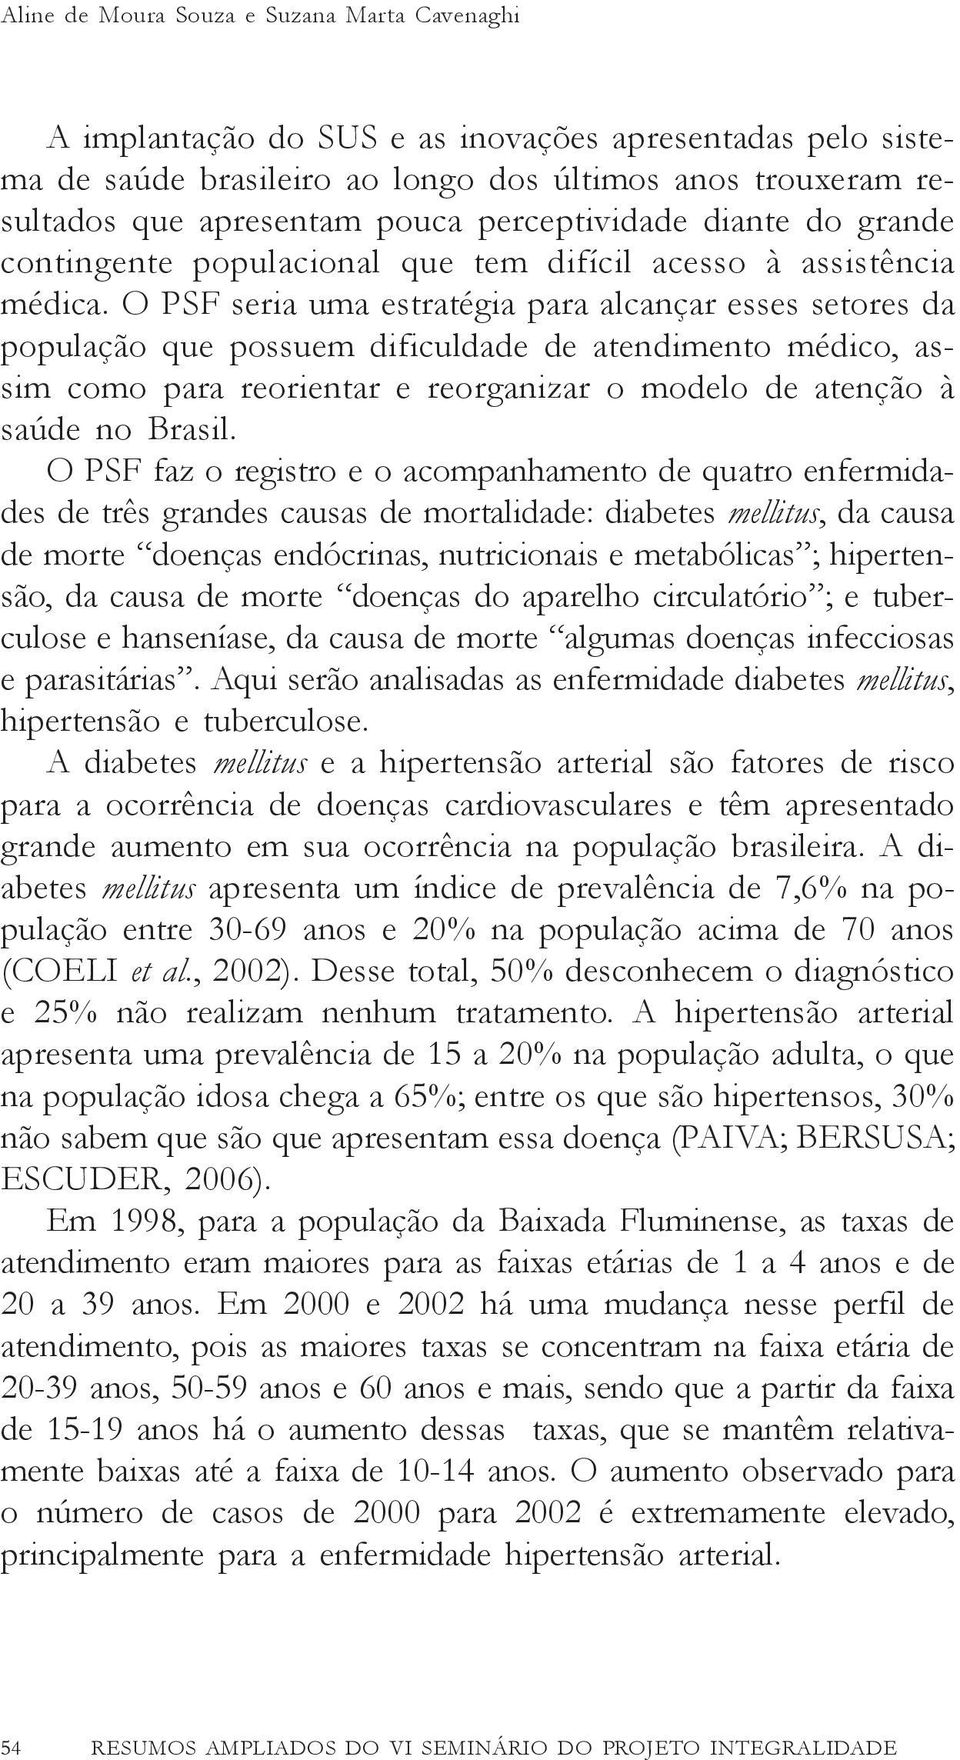 O PSF seria uma estratégia para alcançar esses setores da população que possuem dificuldade de atendimento médico, assim como para reorientar e reorganizar o modelo de atenção à saúde no Brasil.